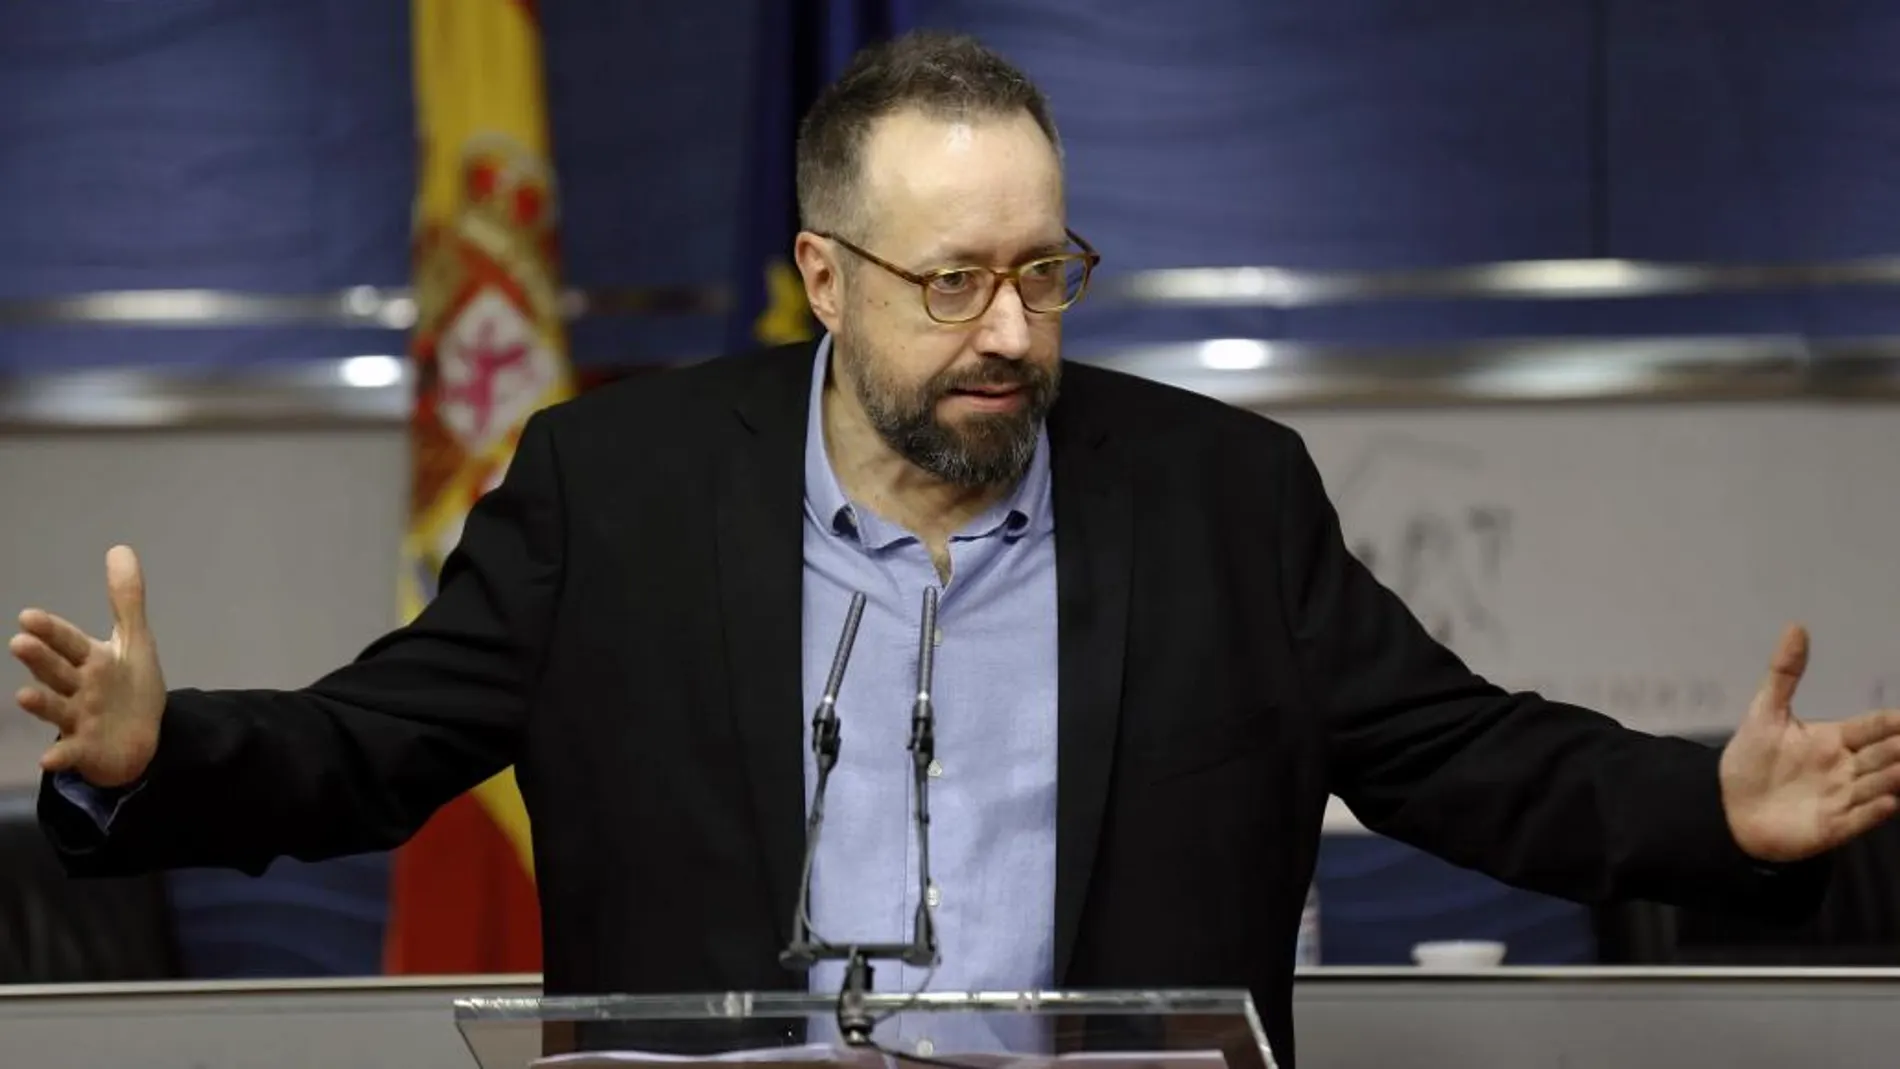 El portavoz titular Juan Carlos Girauta (Ciudadanos), durante la rueda de prensa posterior a la reunión de la Junta de Portavoces